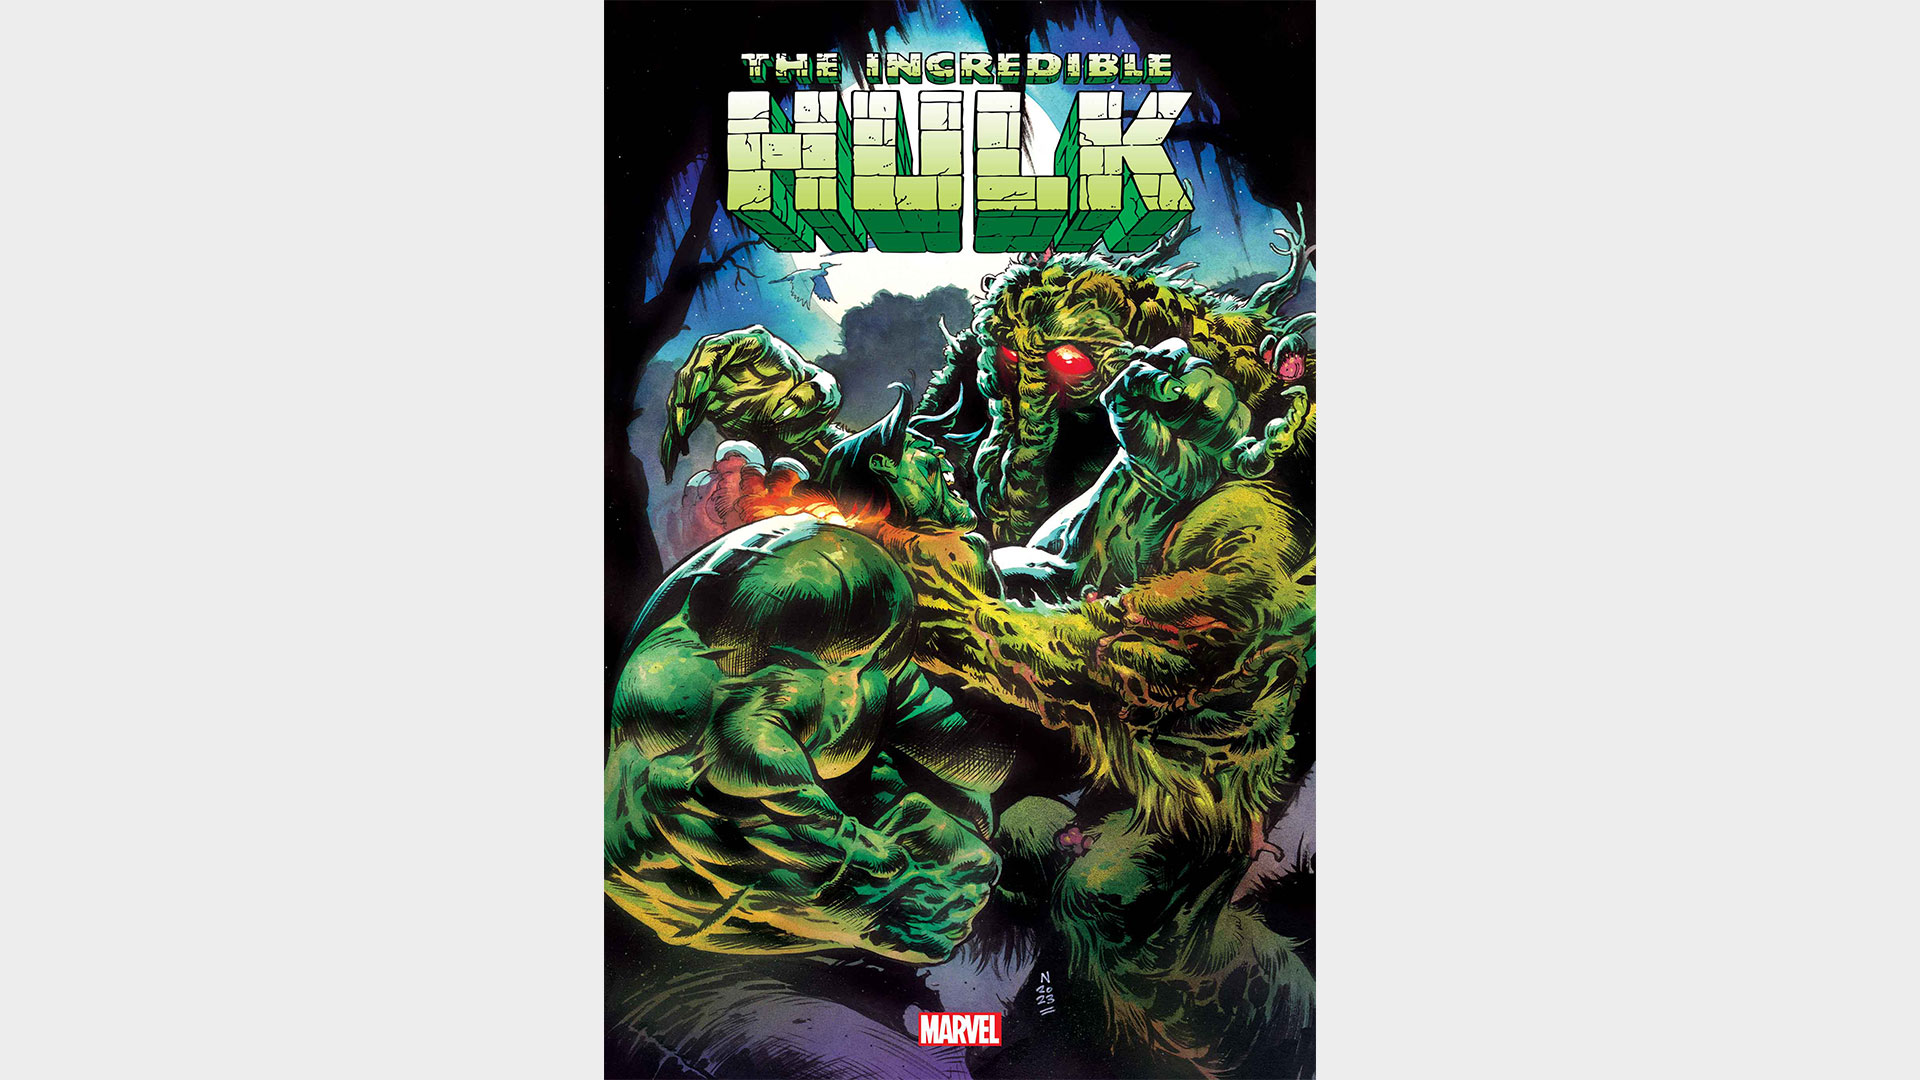 Hihetetlen Hulk #4 borító